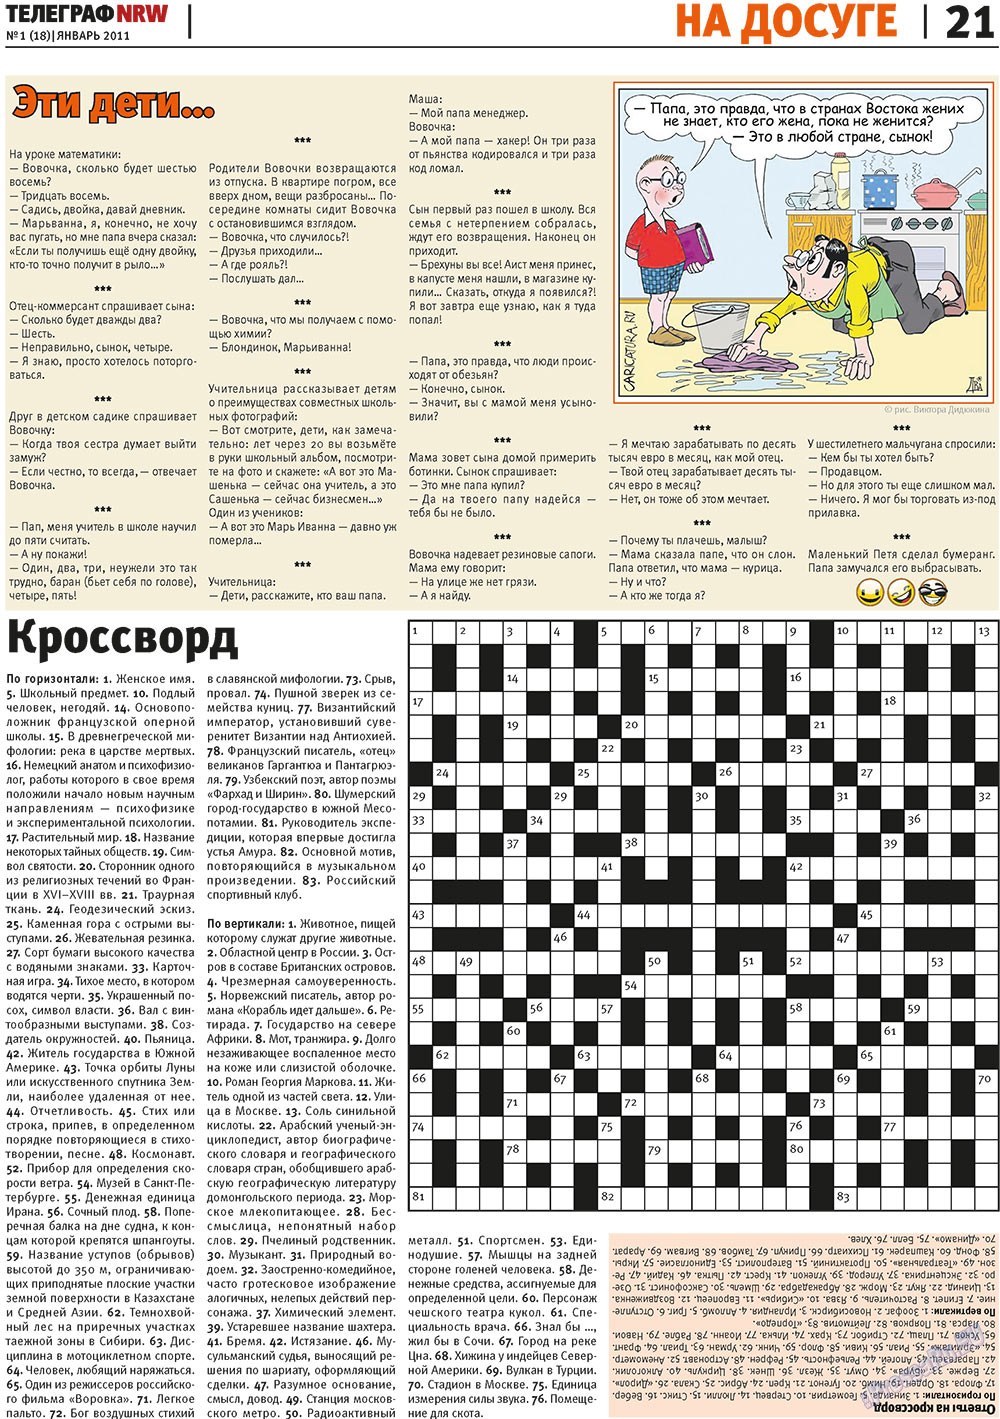 Телеграф NRW (газета). 2011 год, номер 1, стр. 21